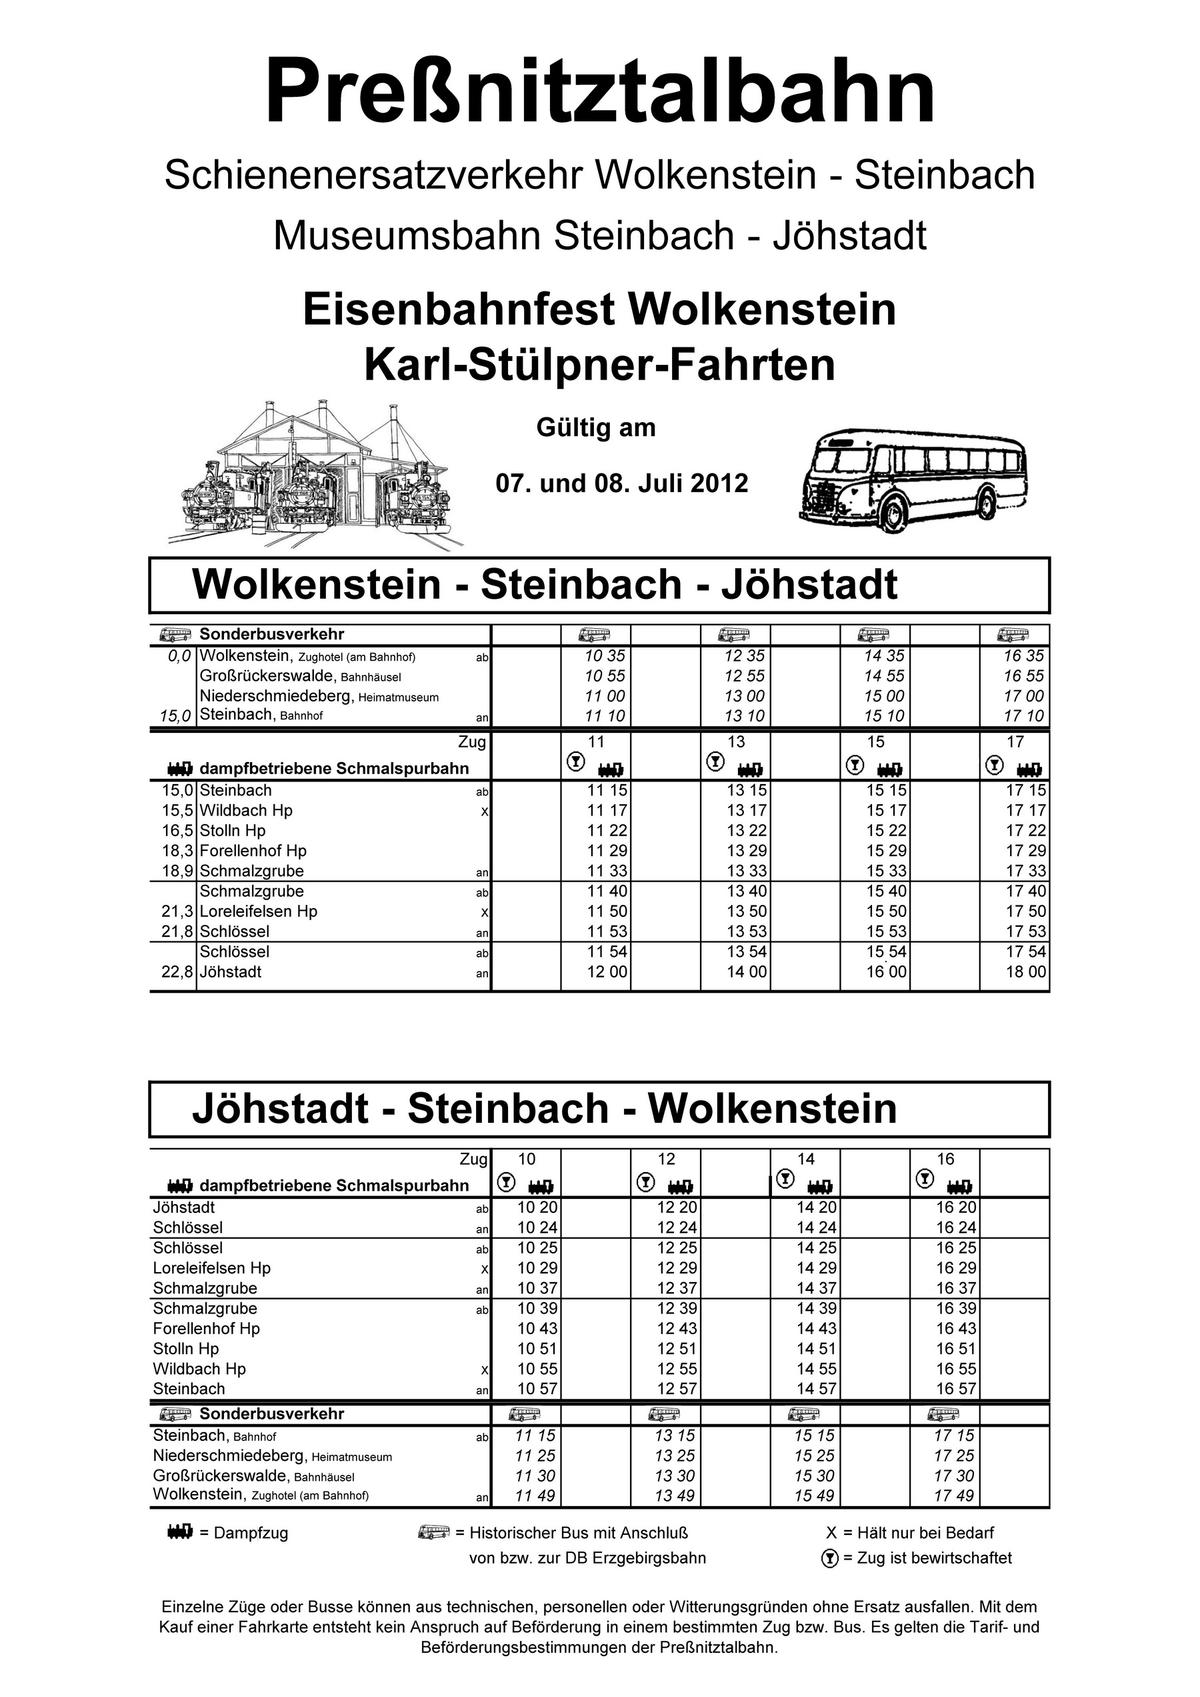 Fahrplan des Historischen Schienenersatzverkehrs Wolkenstein - Steinbach und der Museumsbahn Steinbach - Jöhstadt zu den Fahrtagen am Wochenende 7. und 8. Juli 2012.